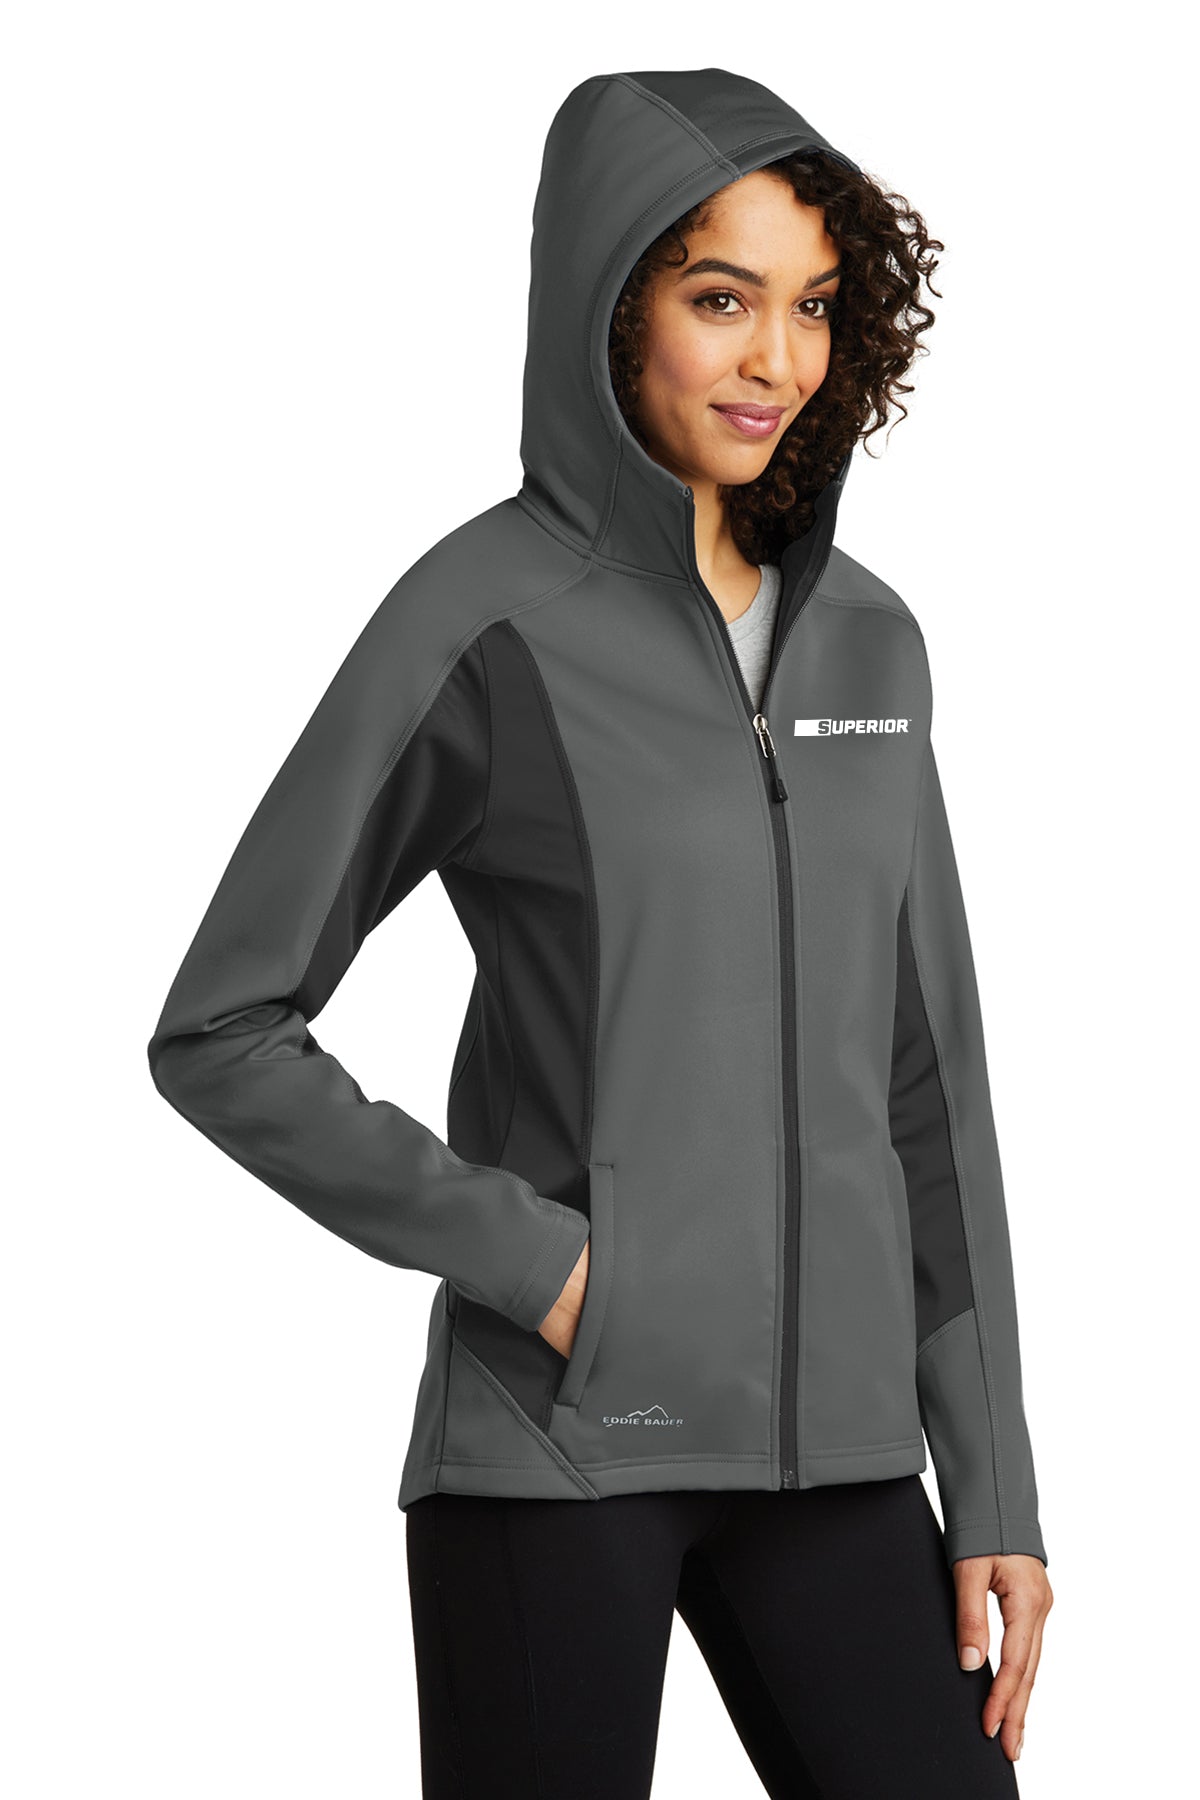 Eddie Bauer® Women's Trail Soft Shell Jacket